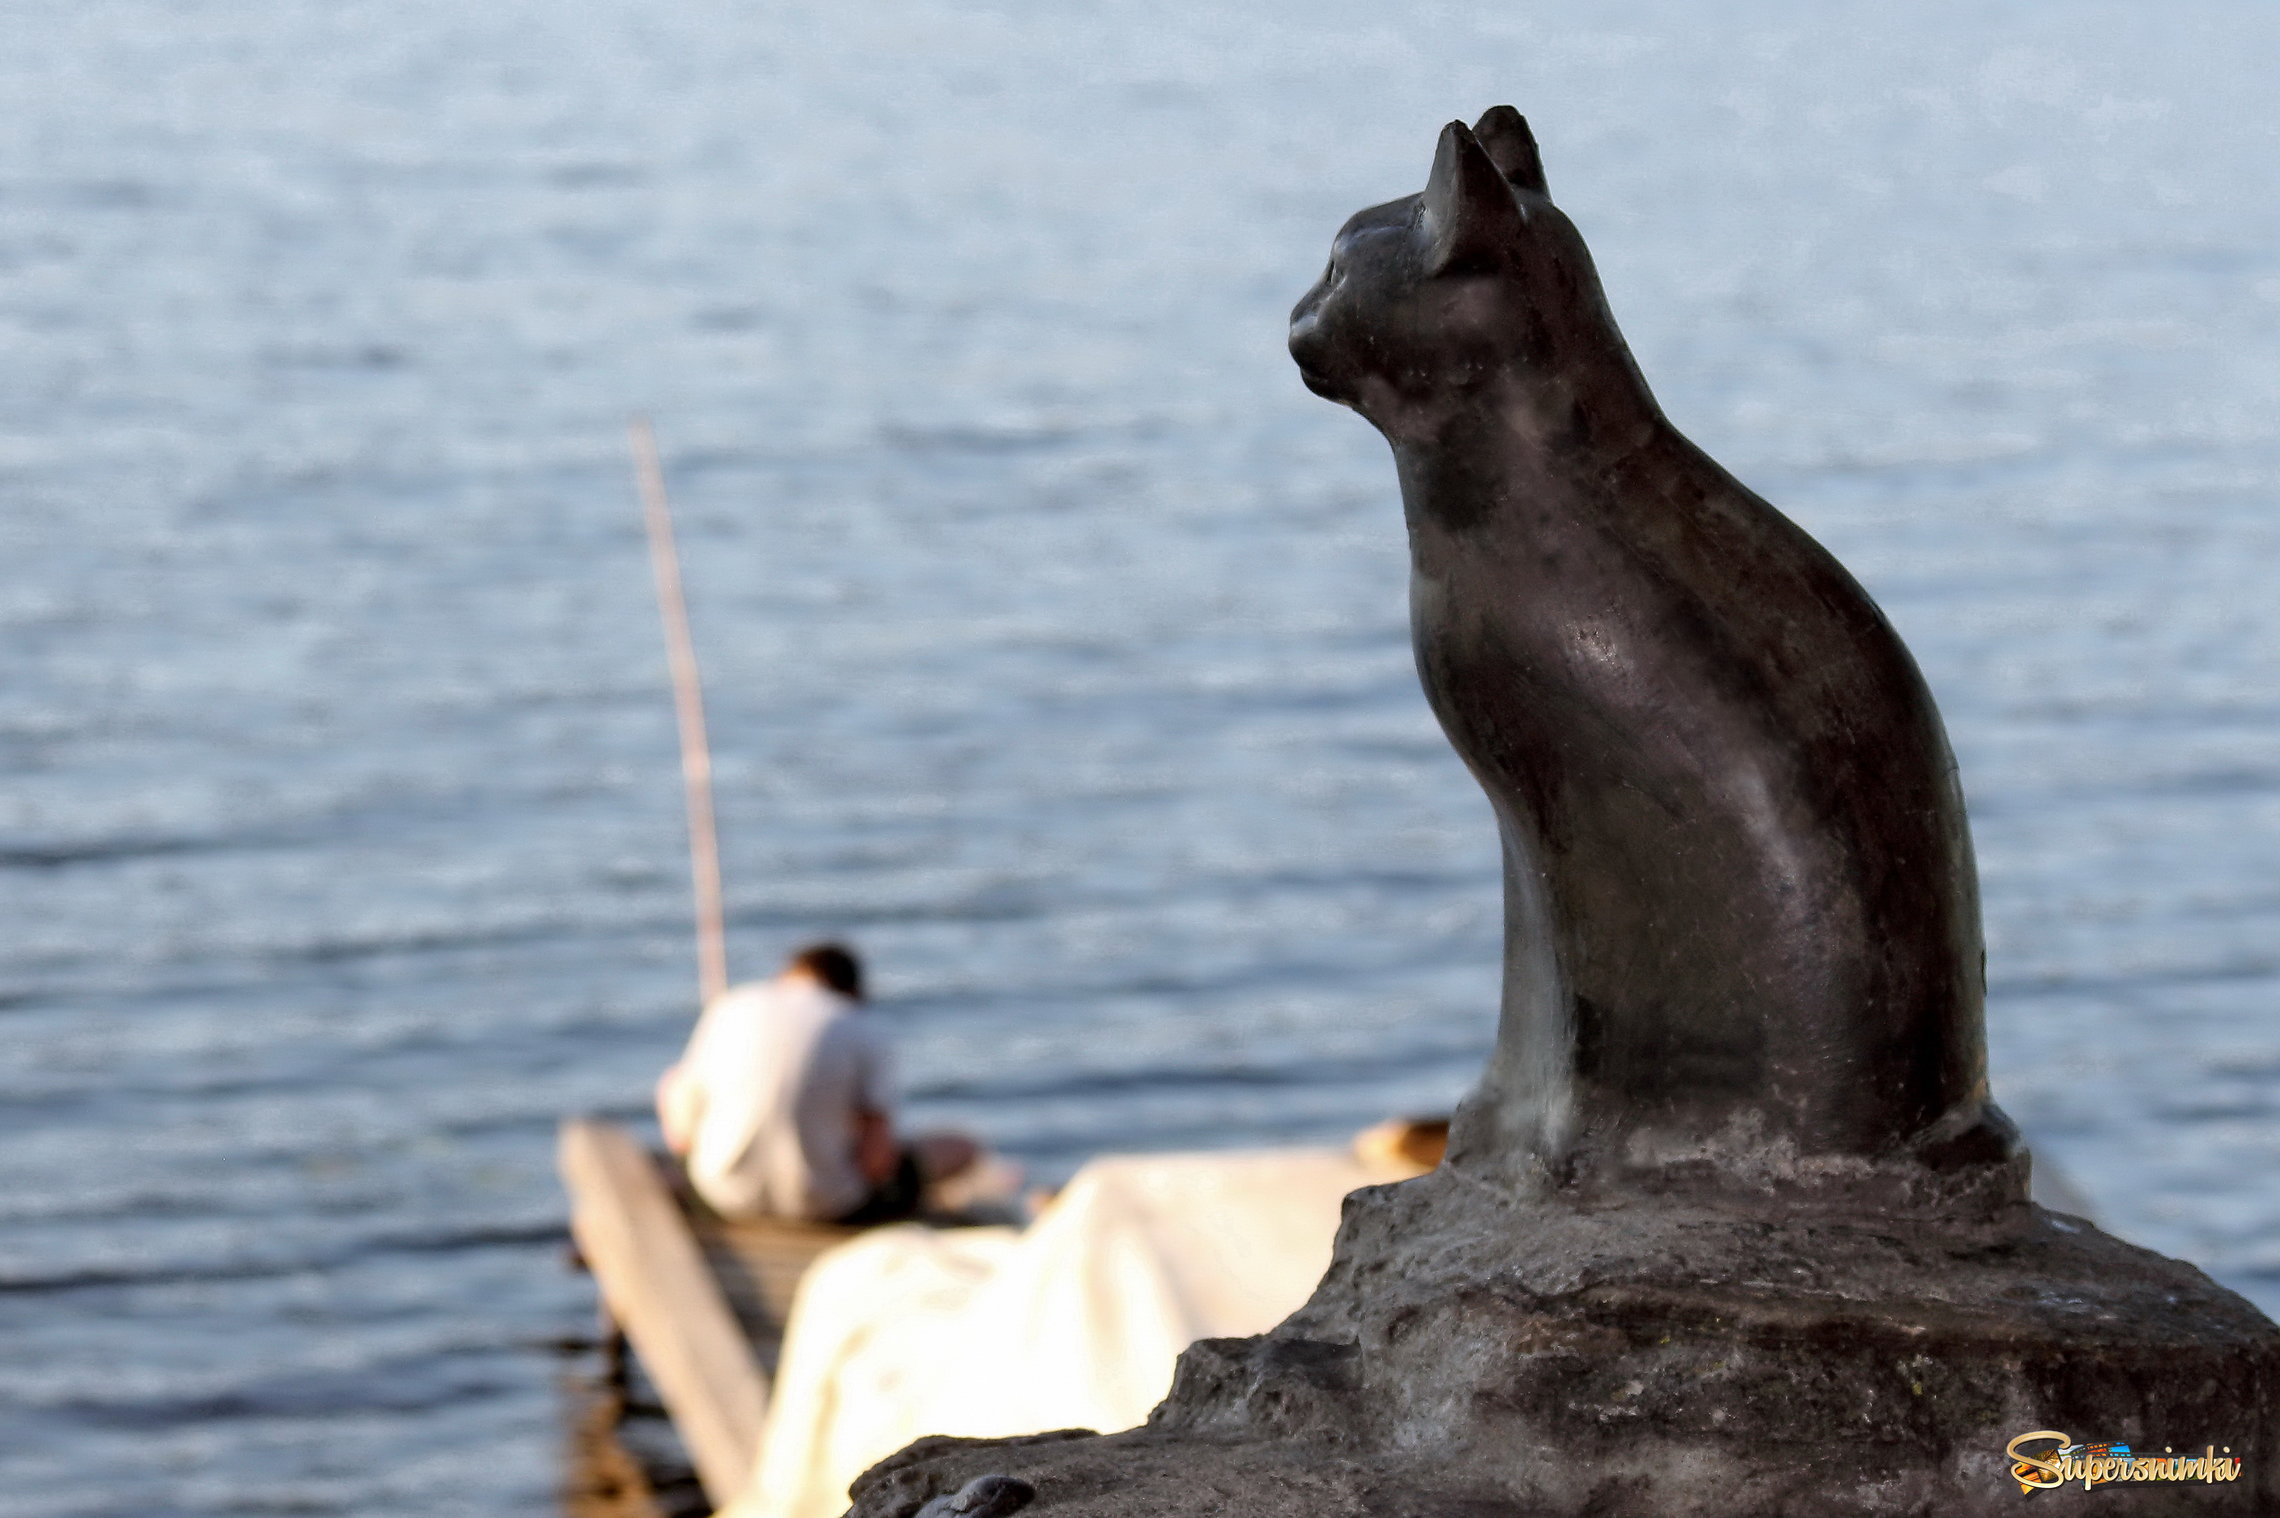  Плёс. Памятник кошке Мухе, ждущей рыбаков.